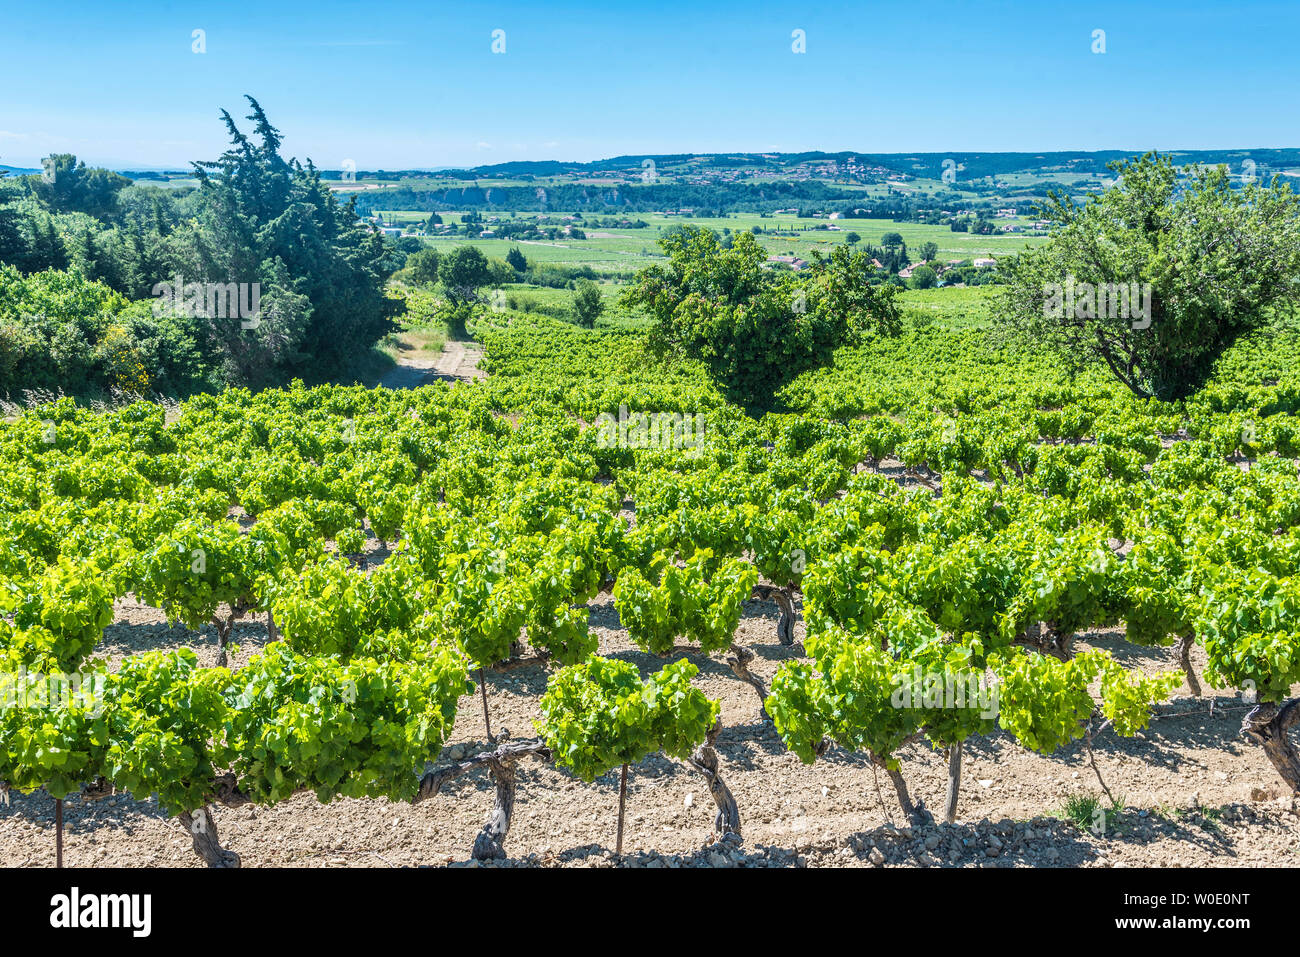 France, Vaucluse, Cotes-du-Rhone AOC vineyard, village of Seguret (Plus Beau Village de France - Most Beautiful Village of France) Stock Photo